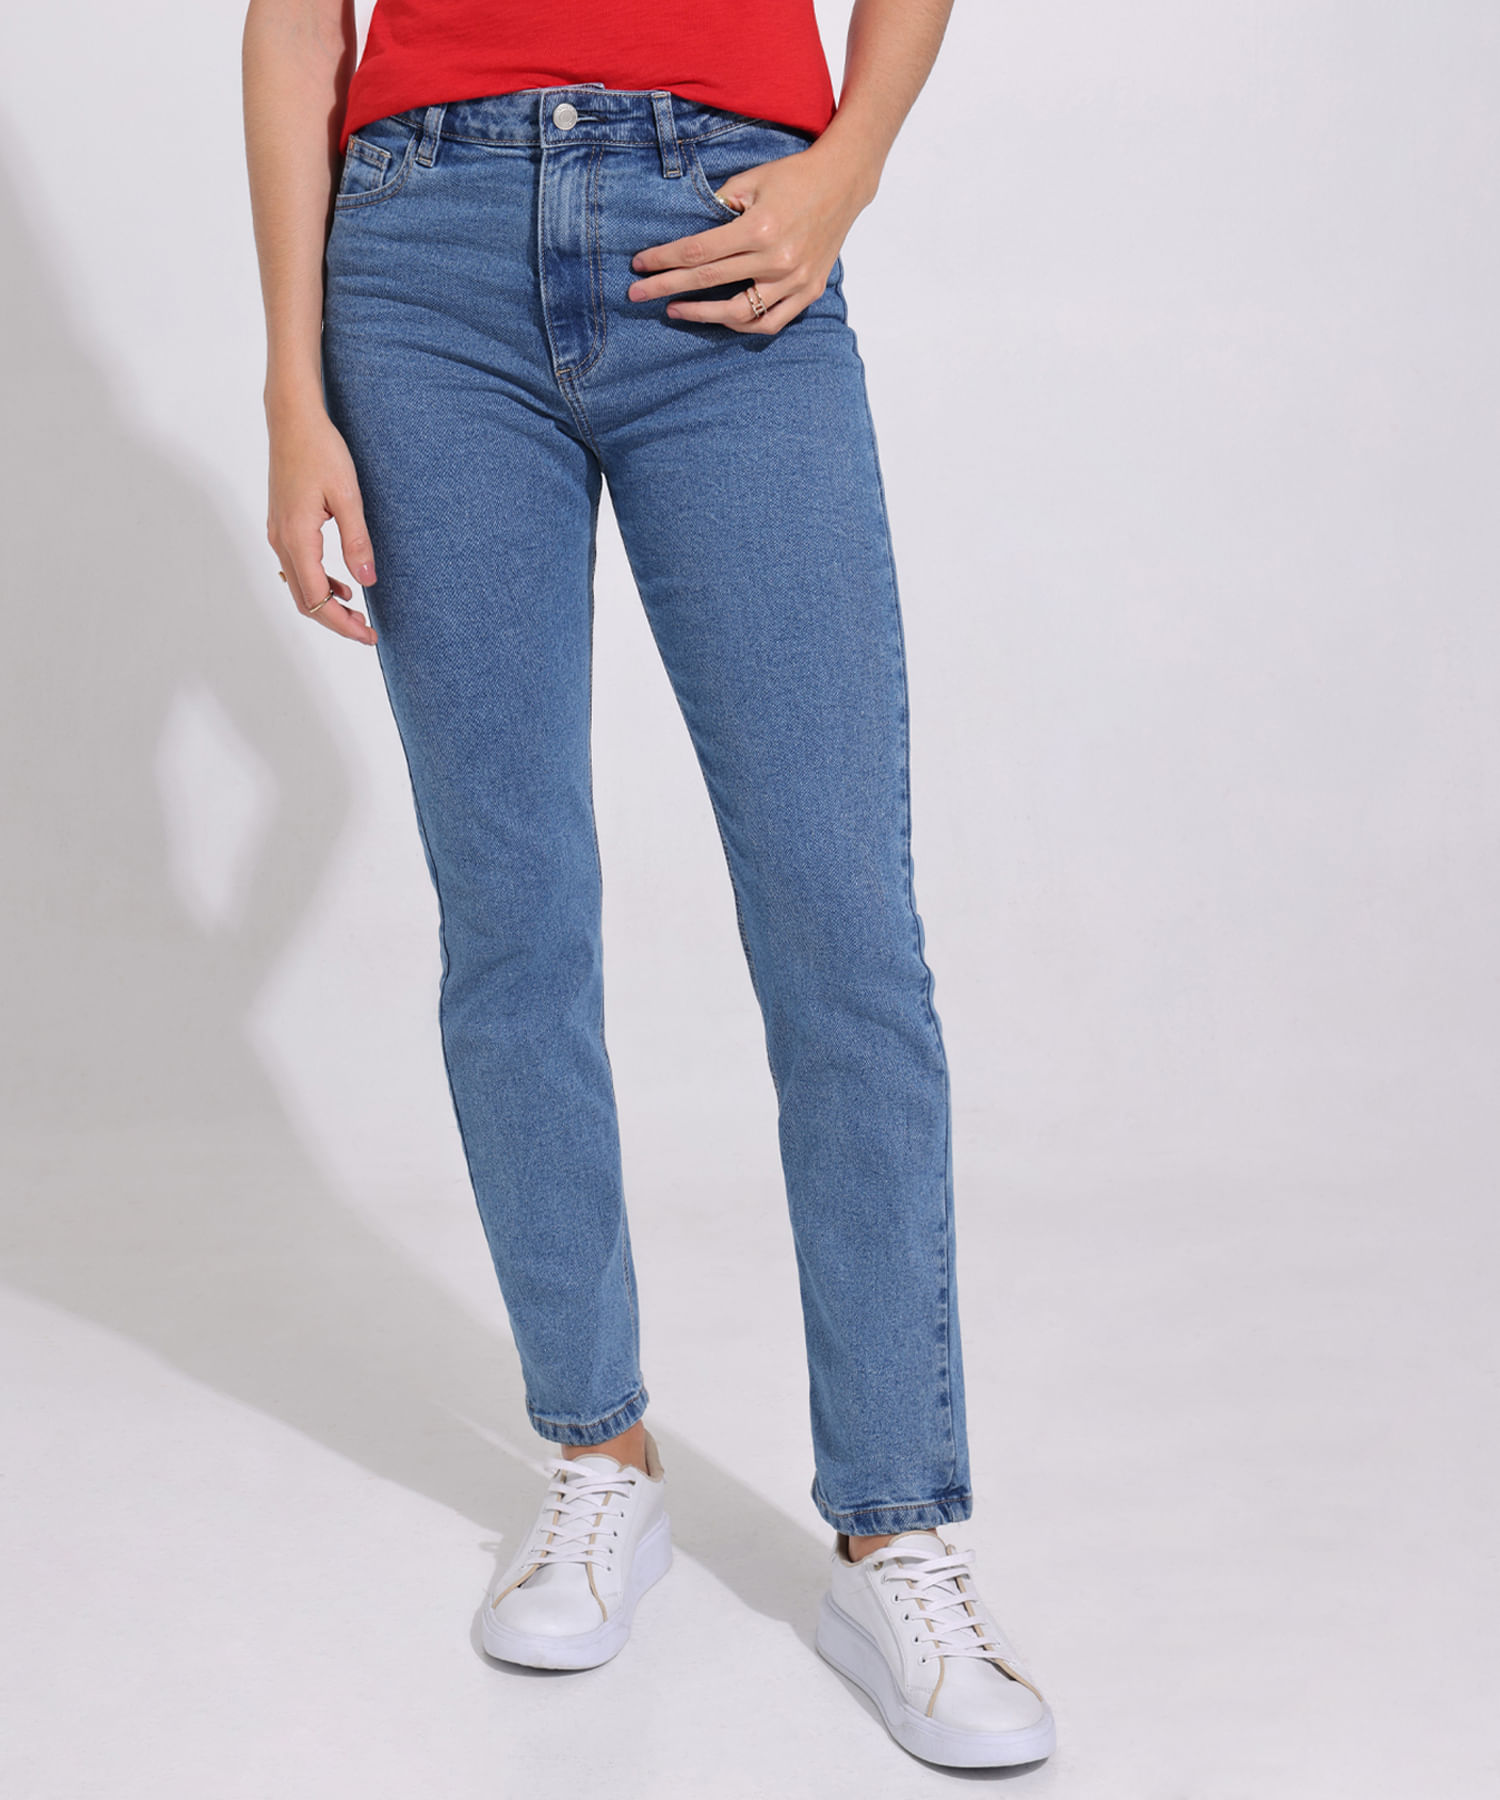 Jeans De Mujer, Silueta Regular, Tono Oscuro Clásico 30160210 - Patprimo